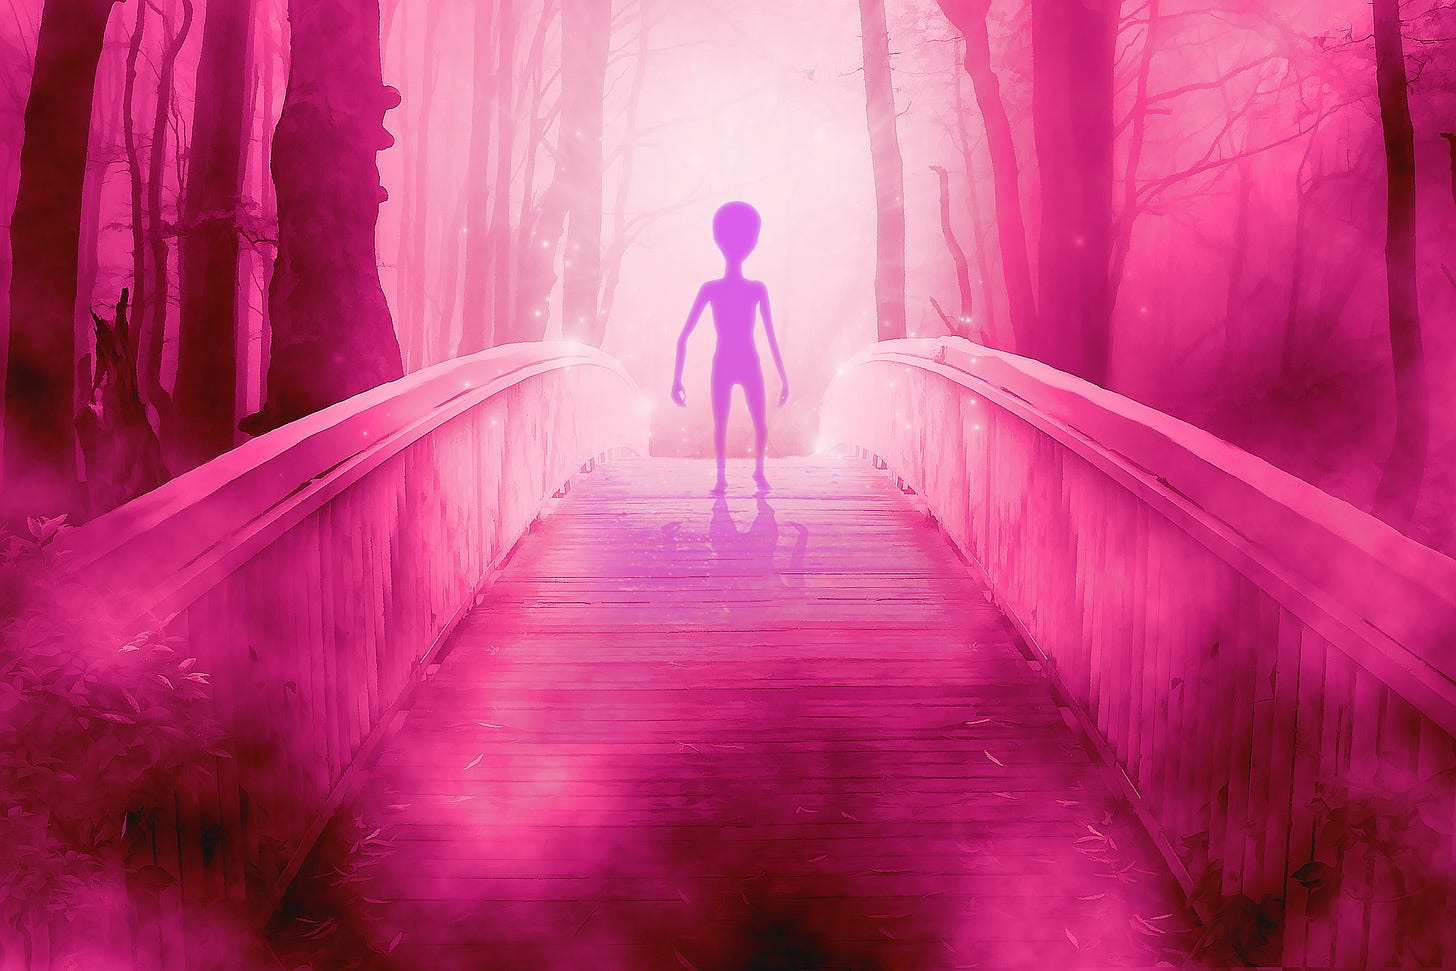 Illustration of an alien figure approaching from across a bridge